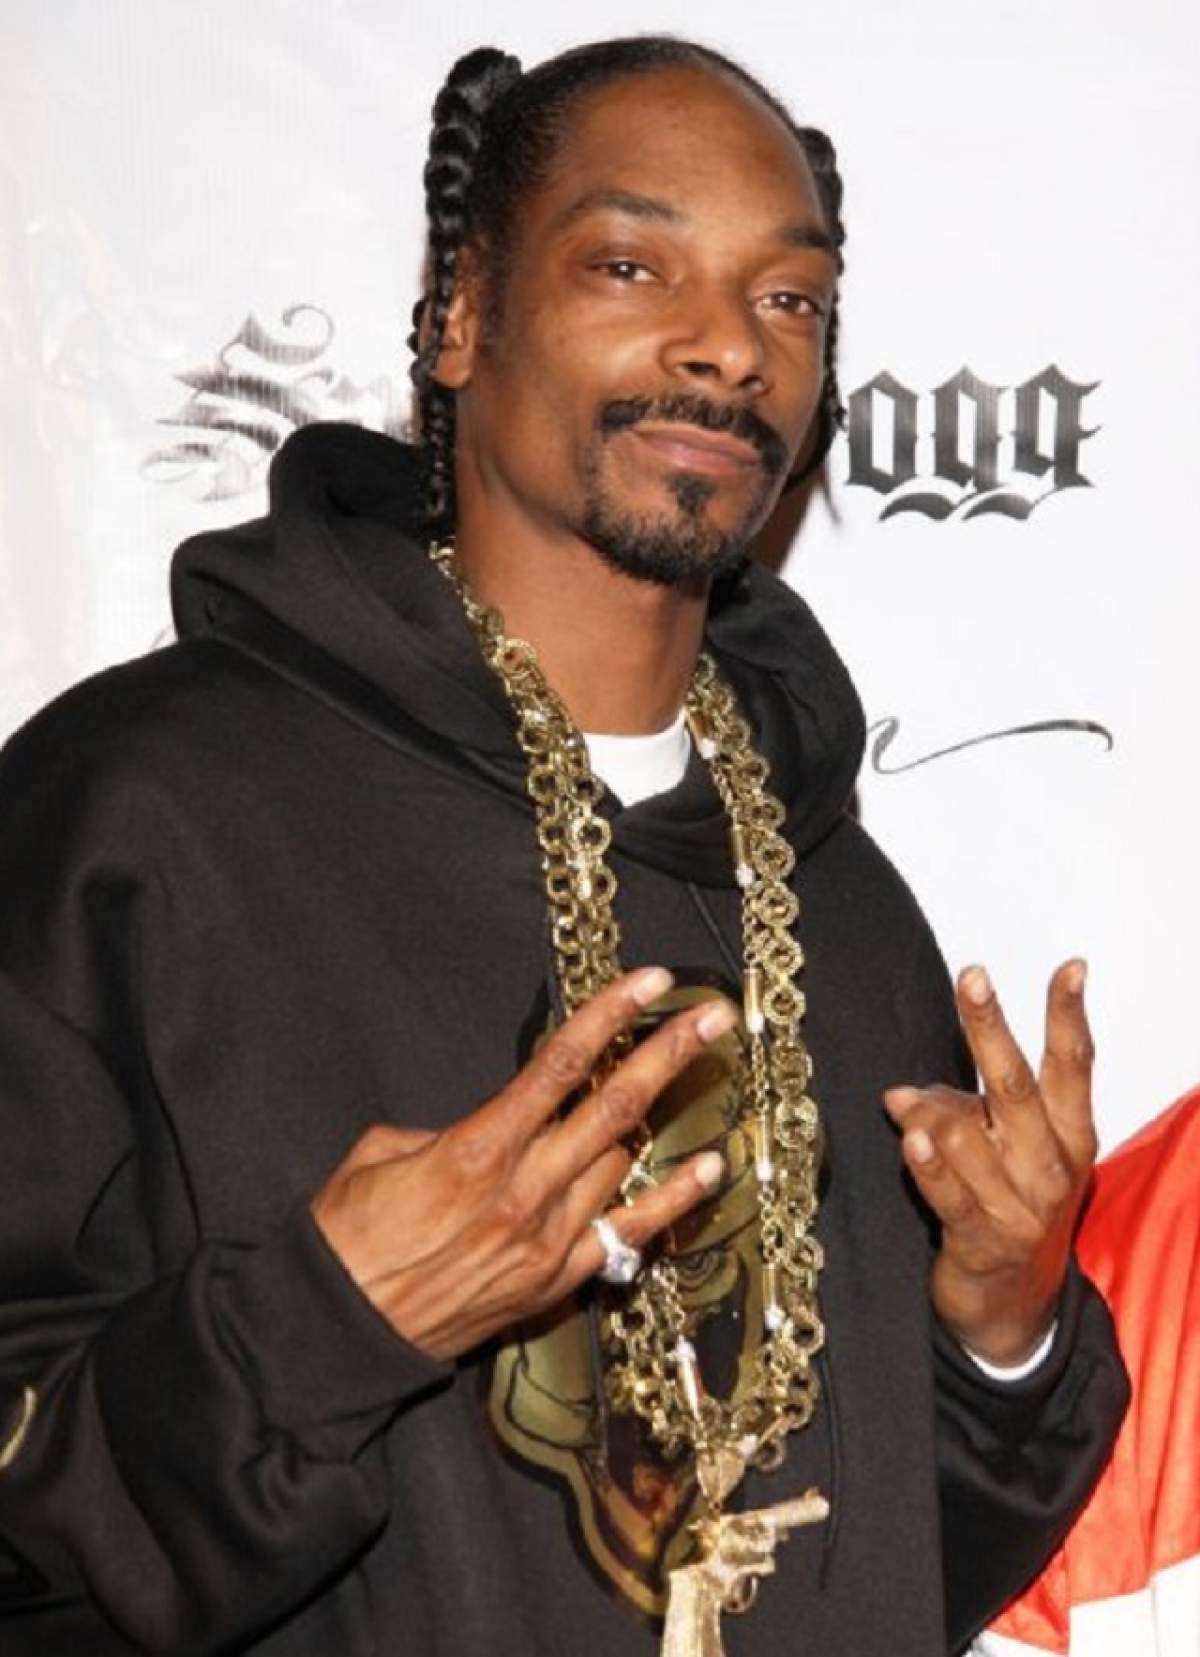 Snoop Dogg şi-a şocat fanii din întreaga lume! Tu ţi-ai face aşa ceva?